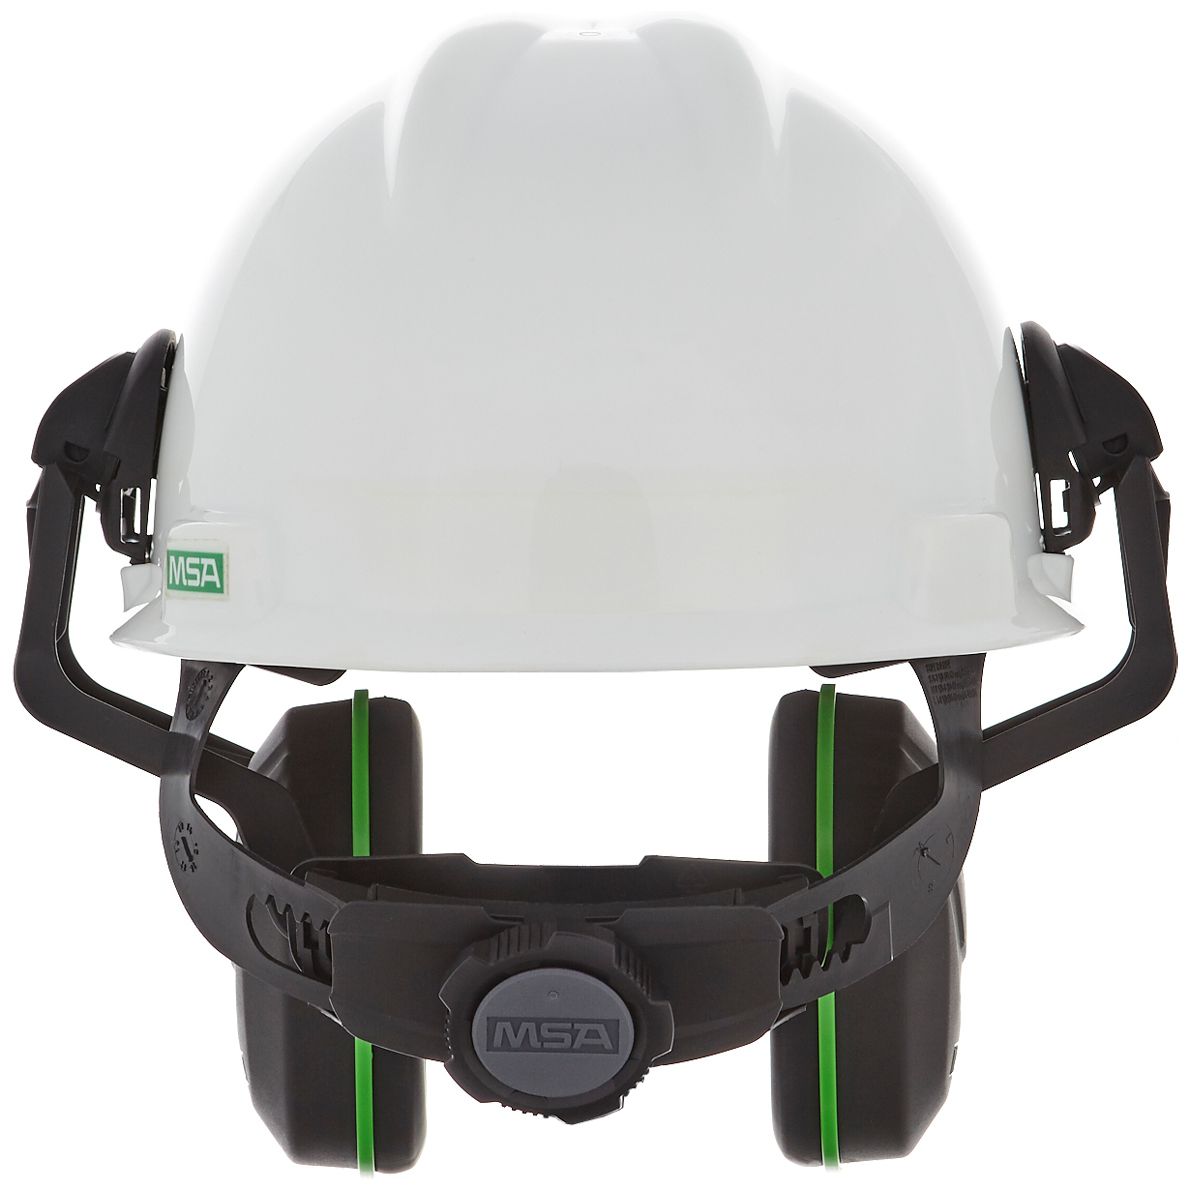 MSA V-Gard Helm-Kapselgehörschutz - Gehörschutz-Kapseln mit Halterung für die Helmmontage - Schwarz/Grün - SNR: 28 dB